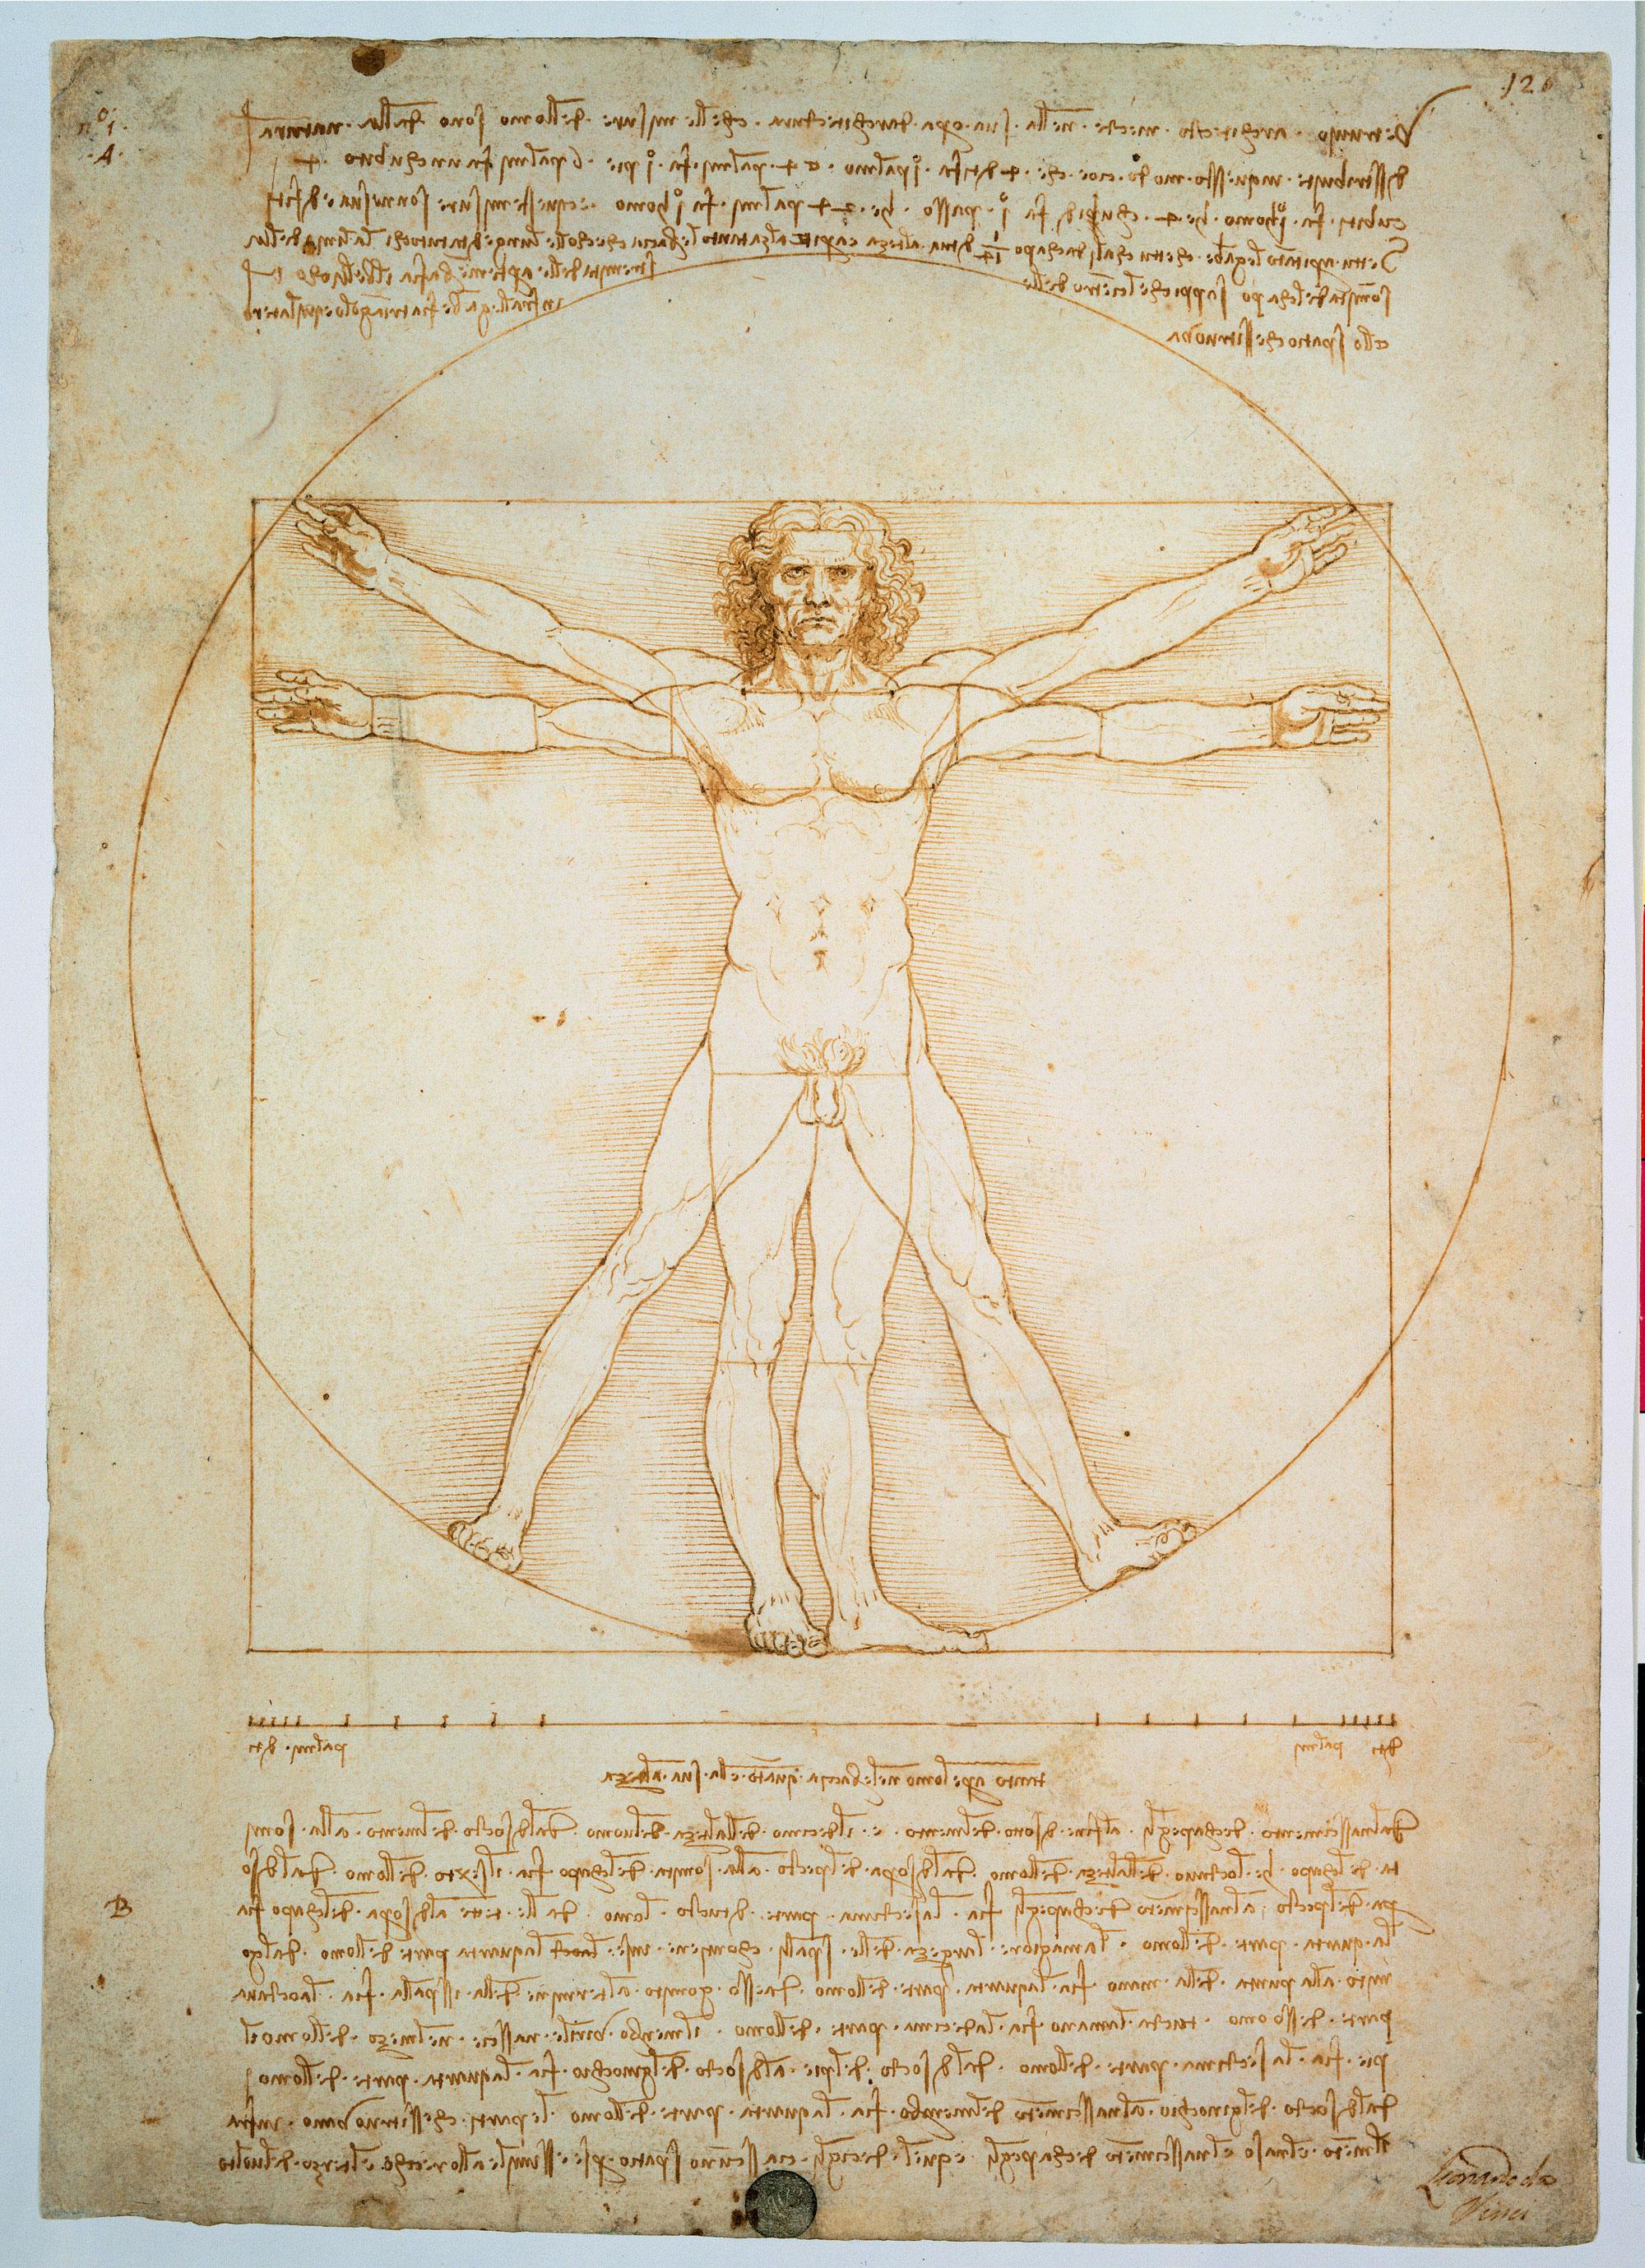 L'homme de Vitruve ou l'art des proportions [Galerie dell'Accademia, Venise. - ©Electa/leemage/afp]